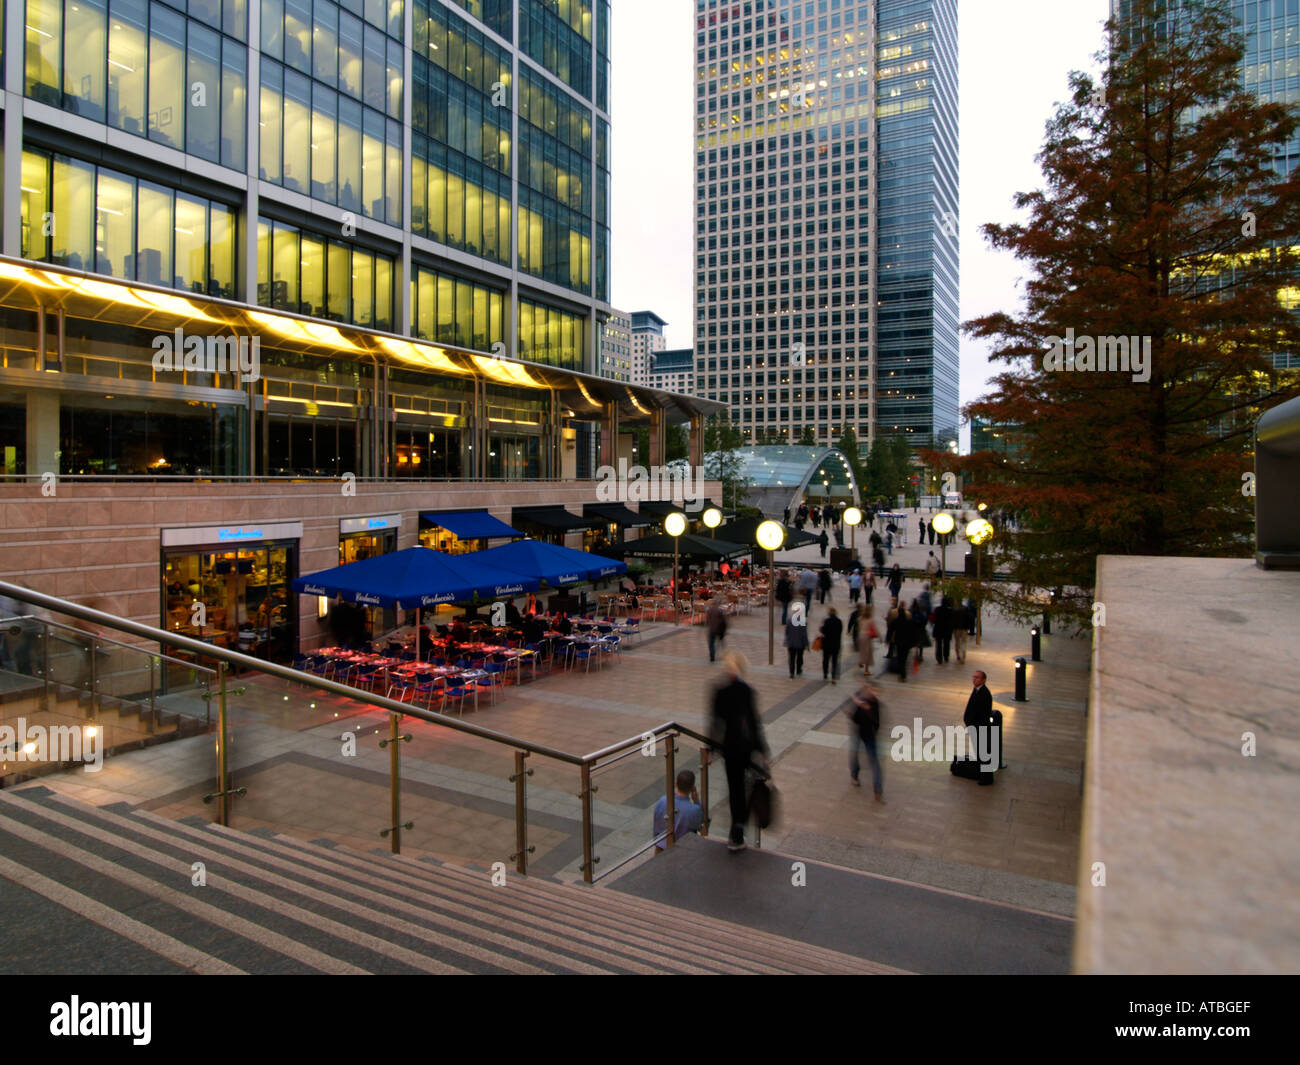 Les immeubles de bureaux les gens et de chaussée cafe à Docklands Canary Wharf London UK Banque D'Images